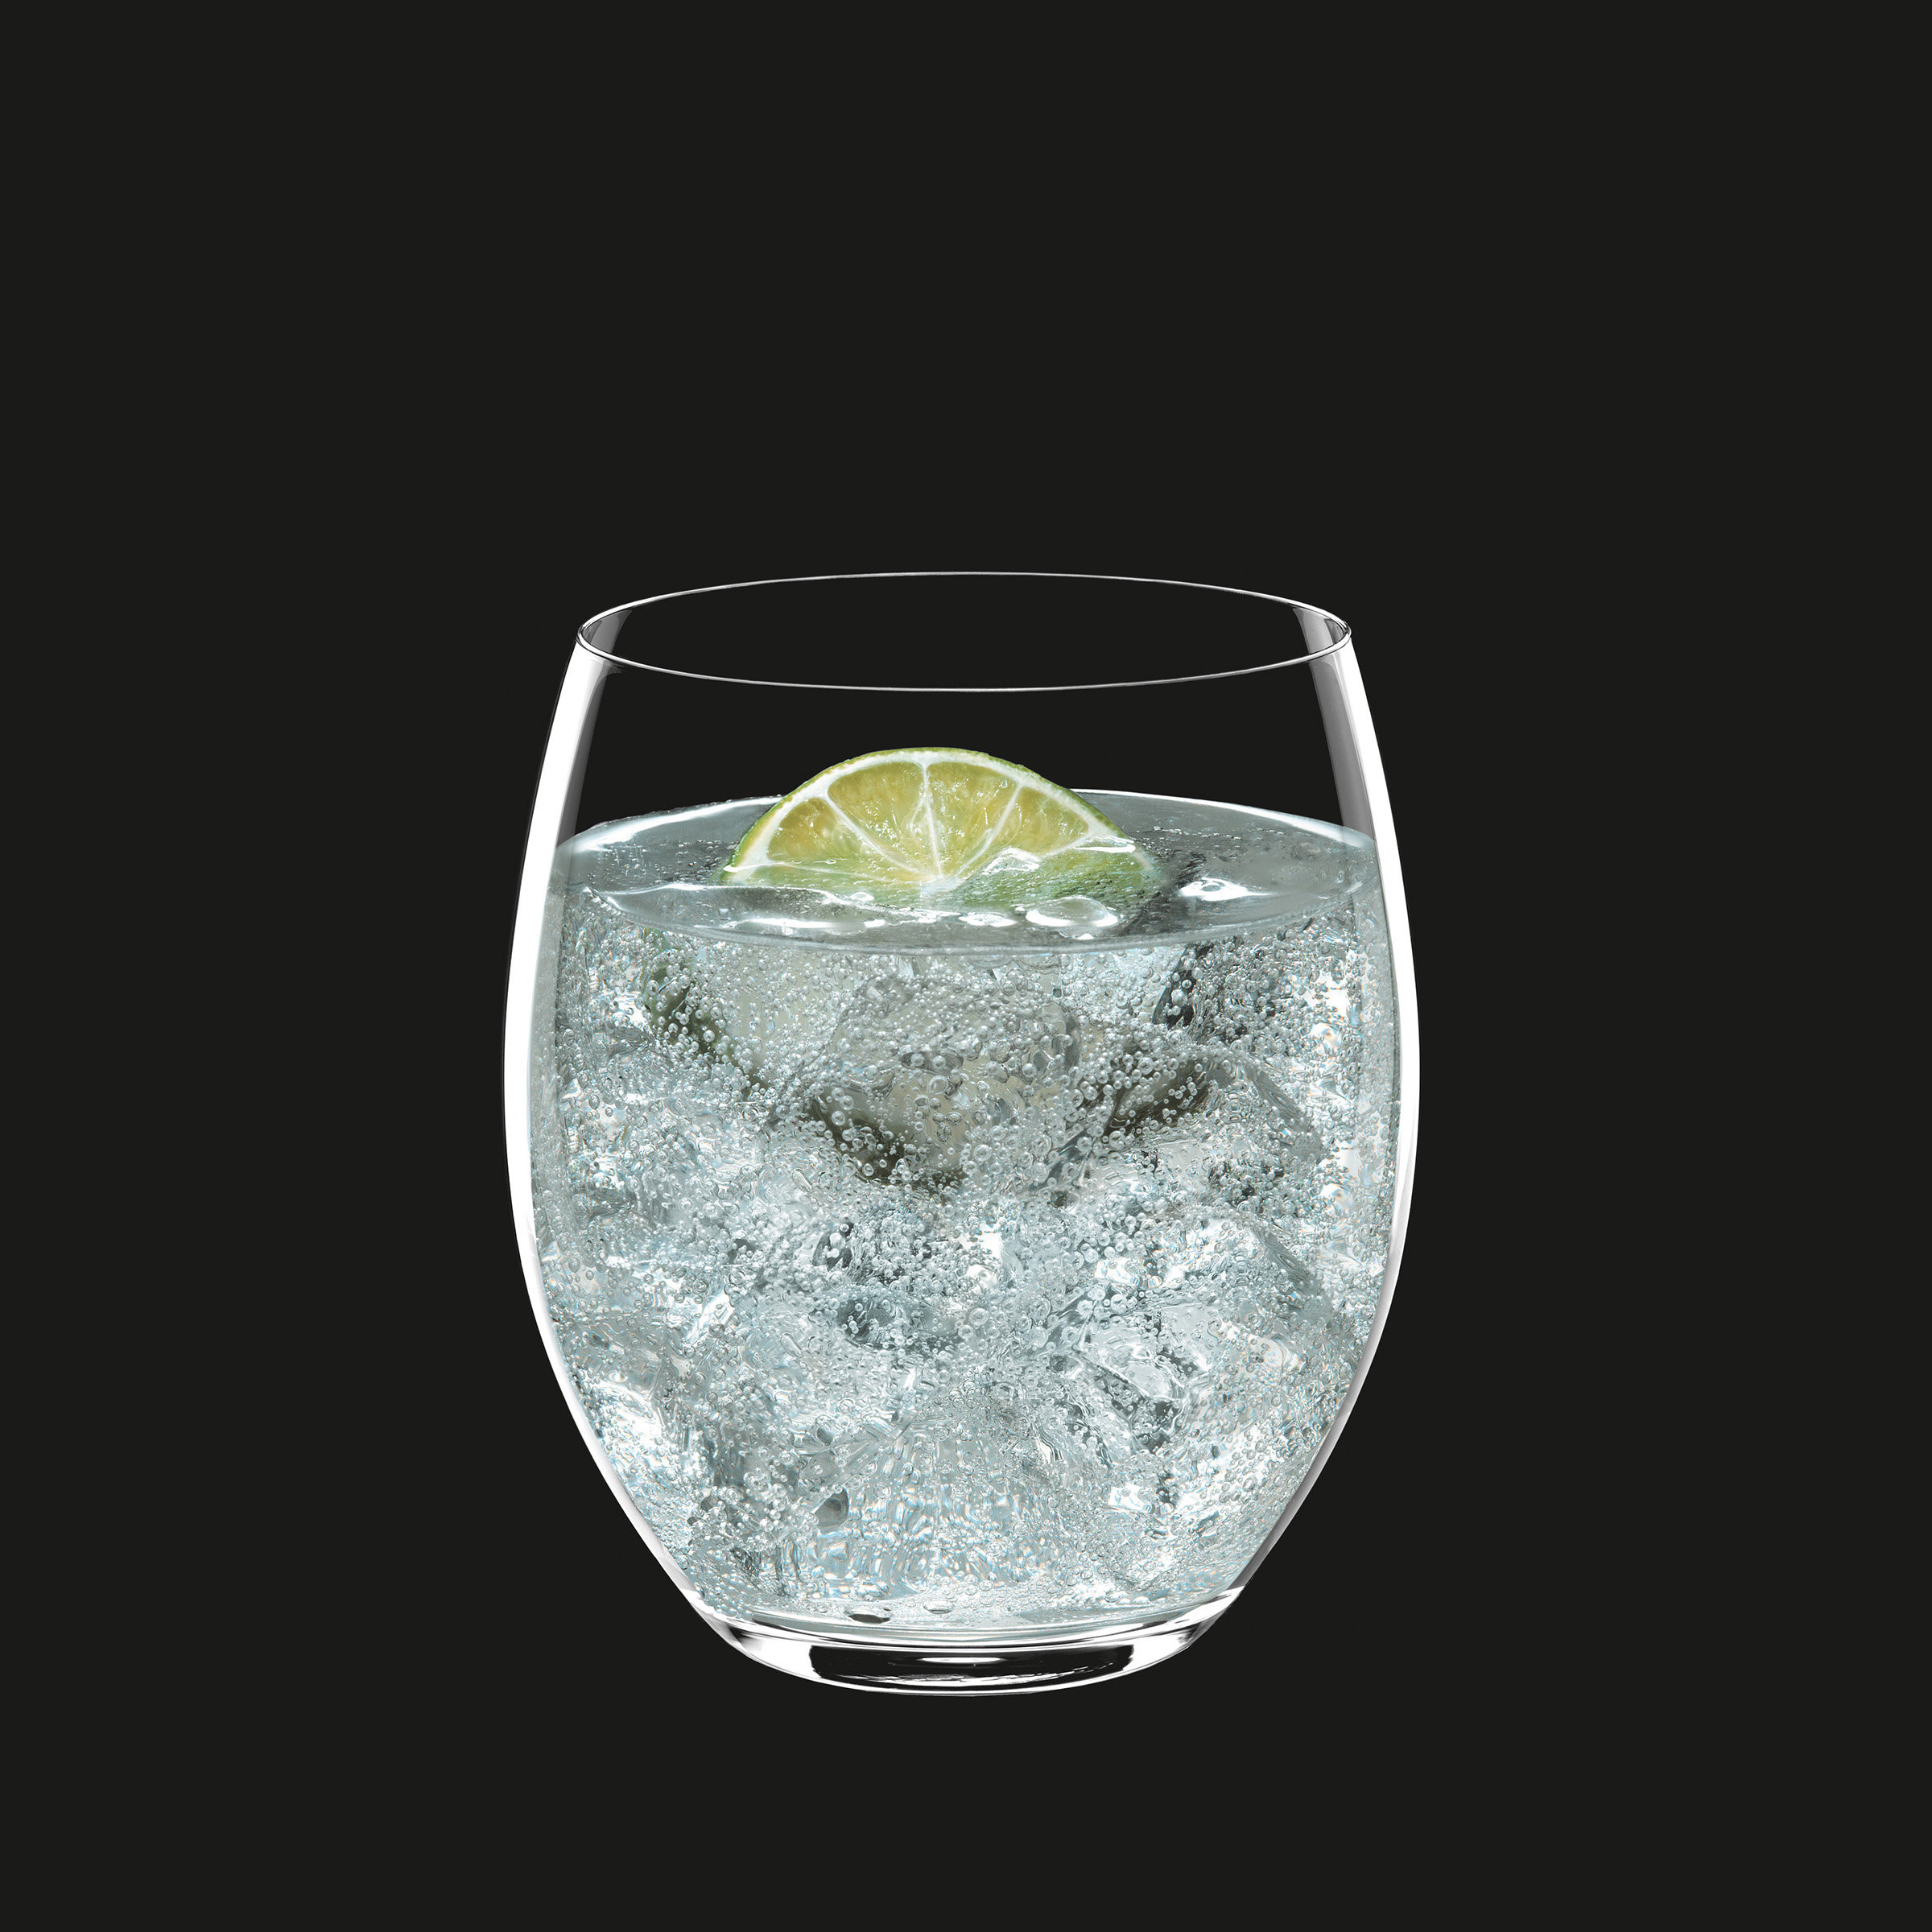 Luigi Bormioli Sublime Beverage Glass, Set of 4